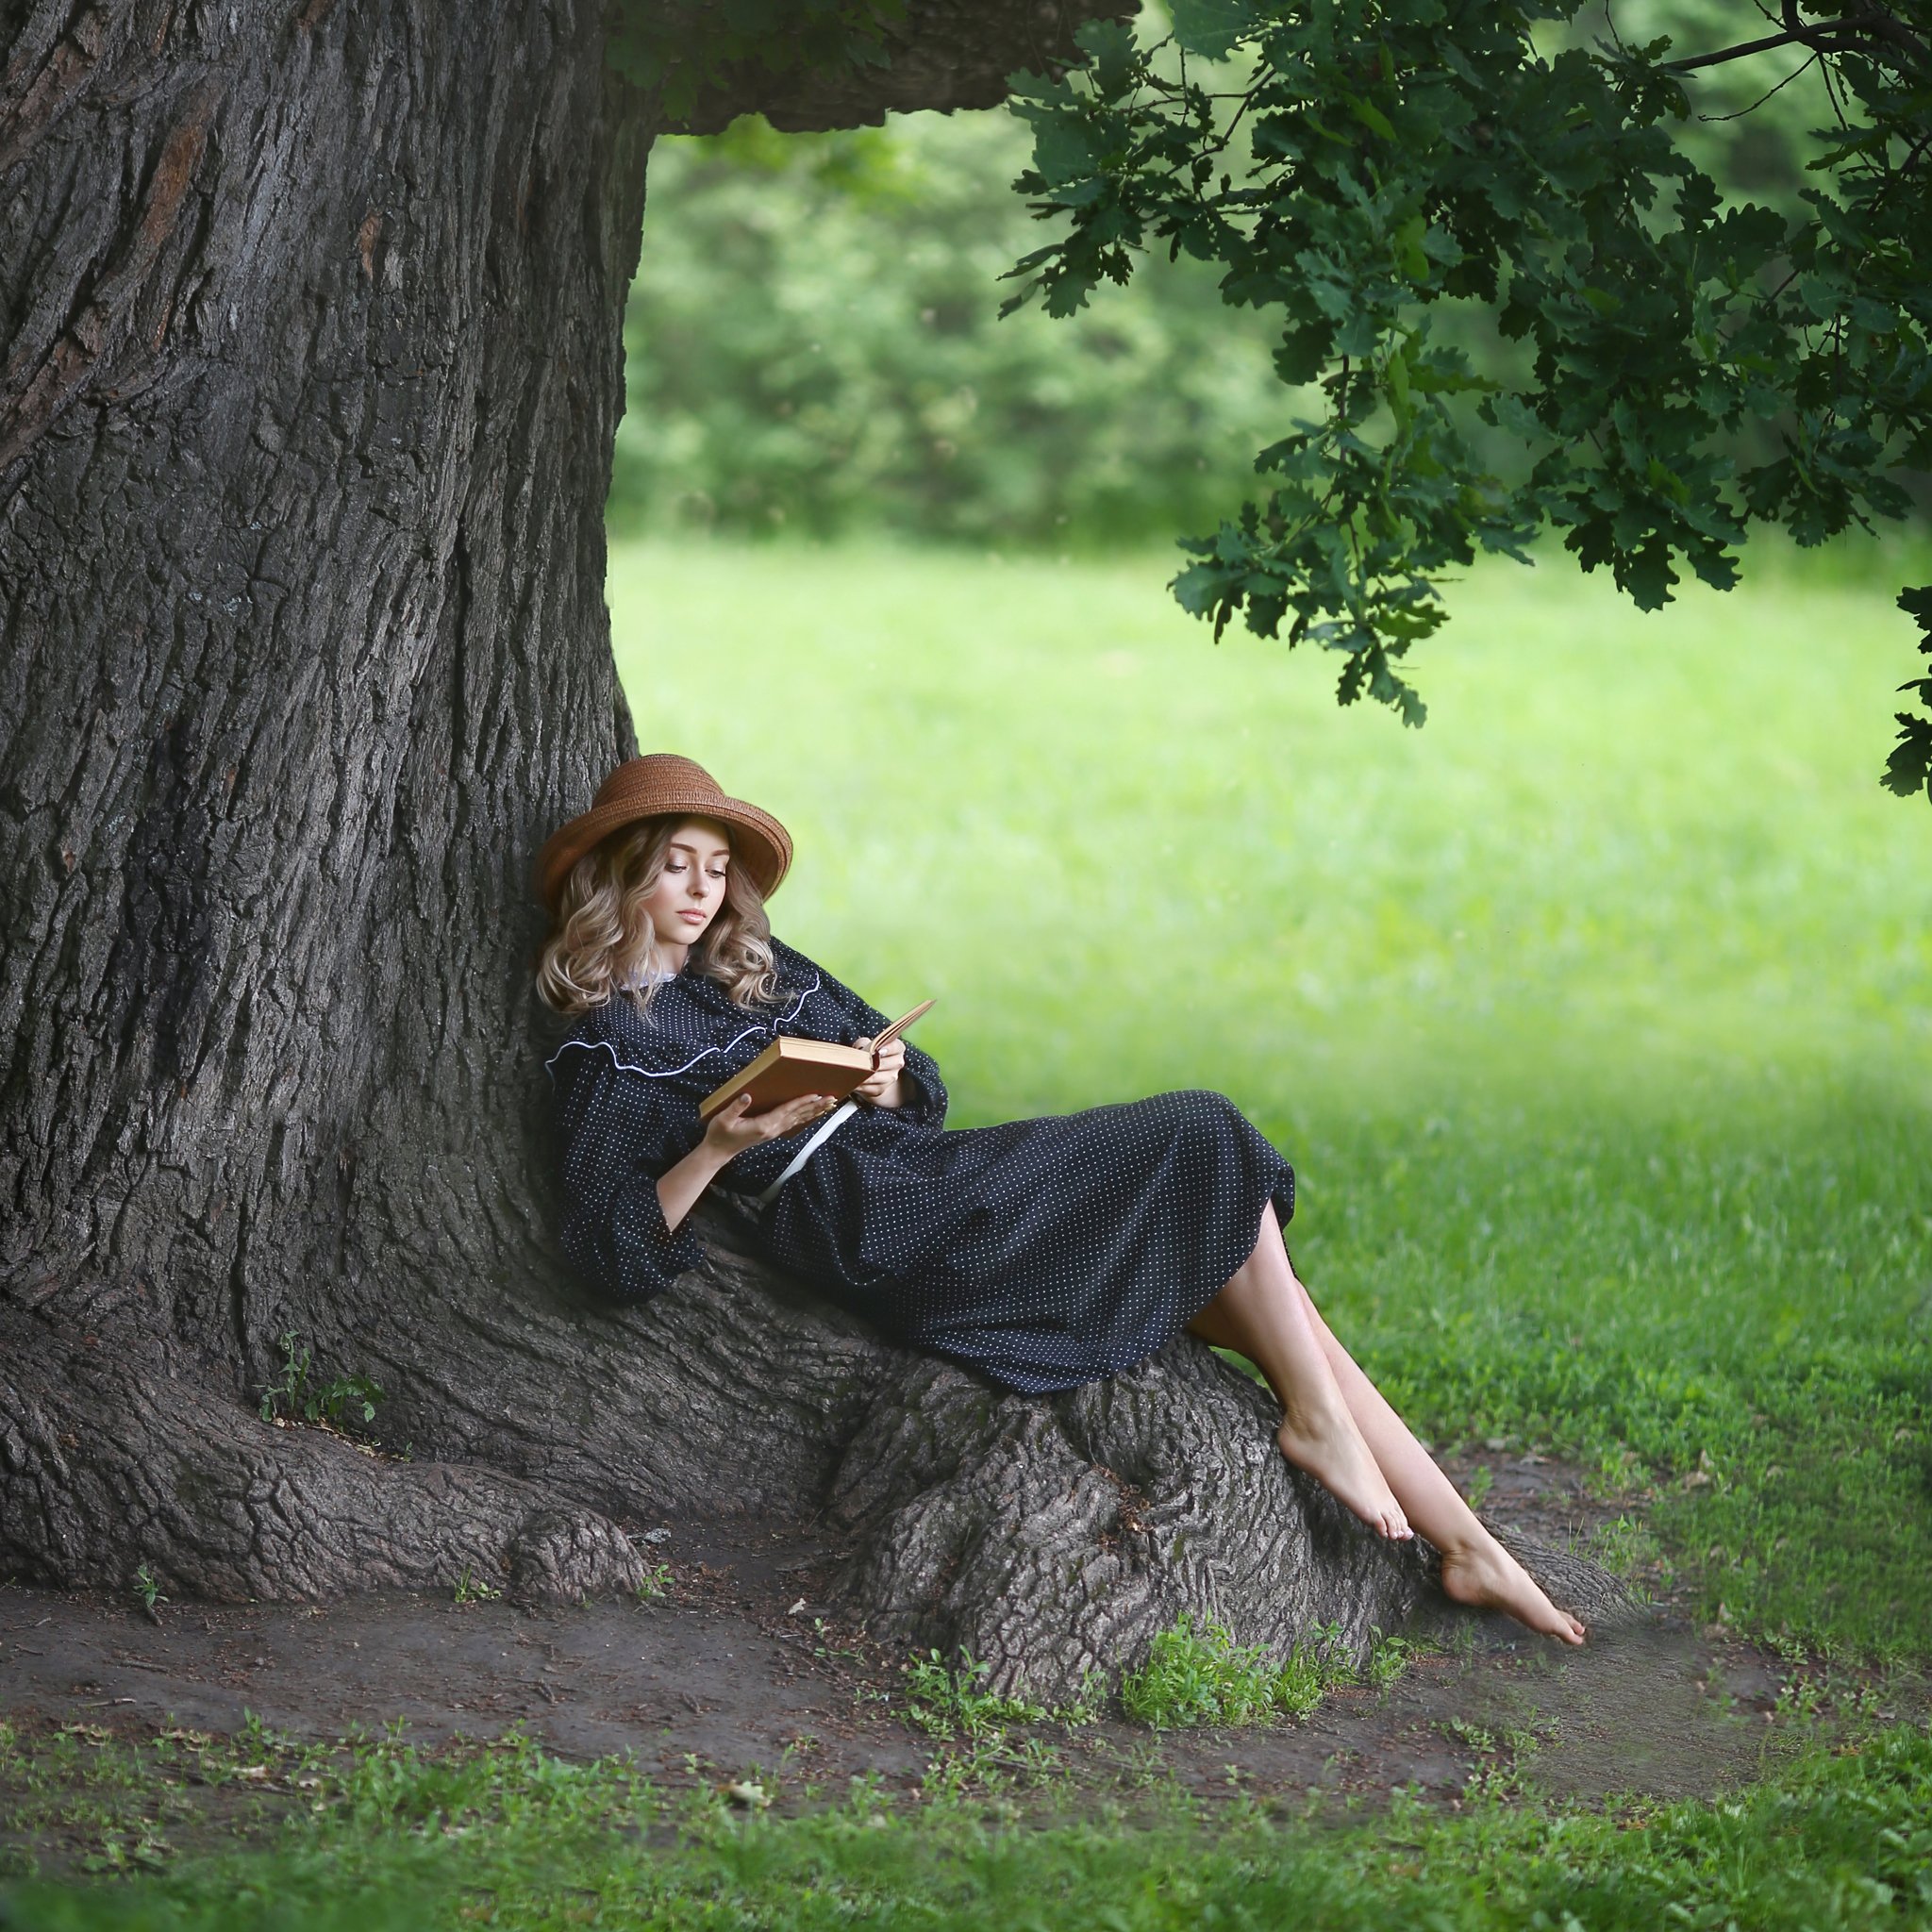 старый дуб, огромный дуб, девушка в шляпке, девушка читает книгу, книга, лето, зелень, босая, босая девушка, блондинка, ретро, в парке, девушка в парке, девушка в парке с книгой, читает, чтение, Ирина Голубятникова